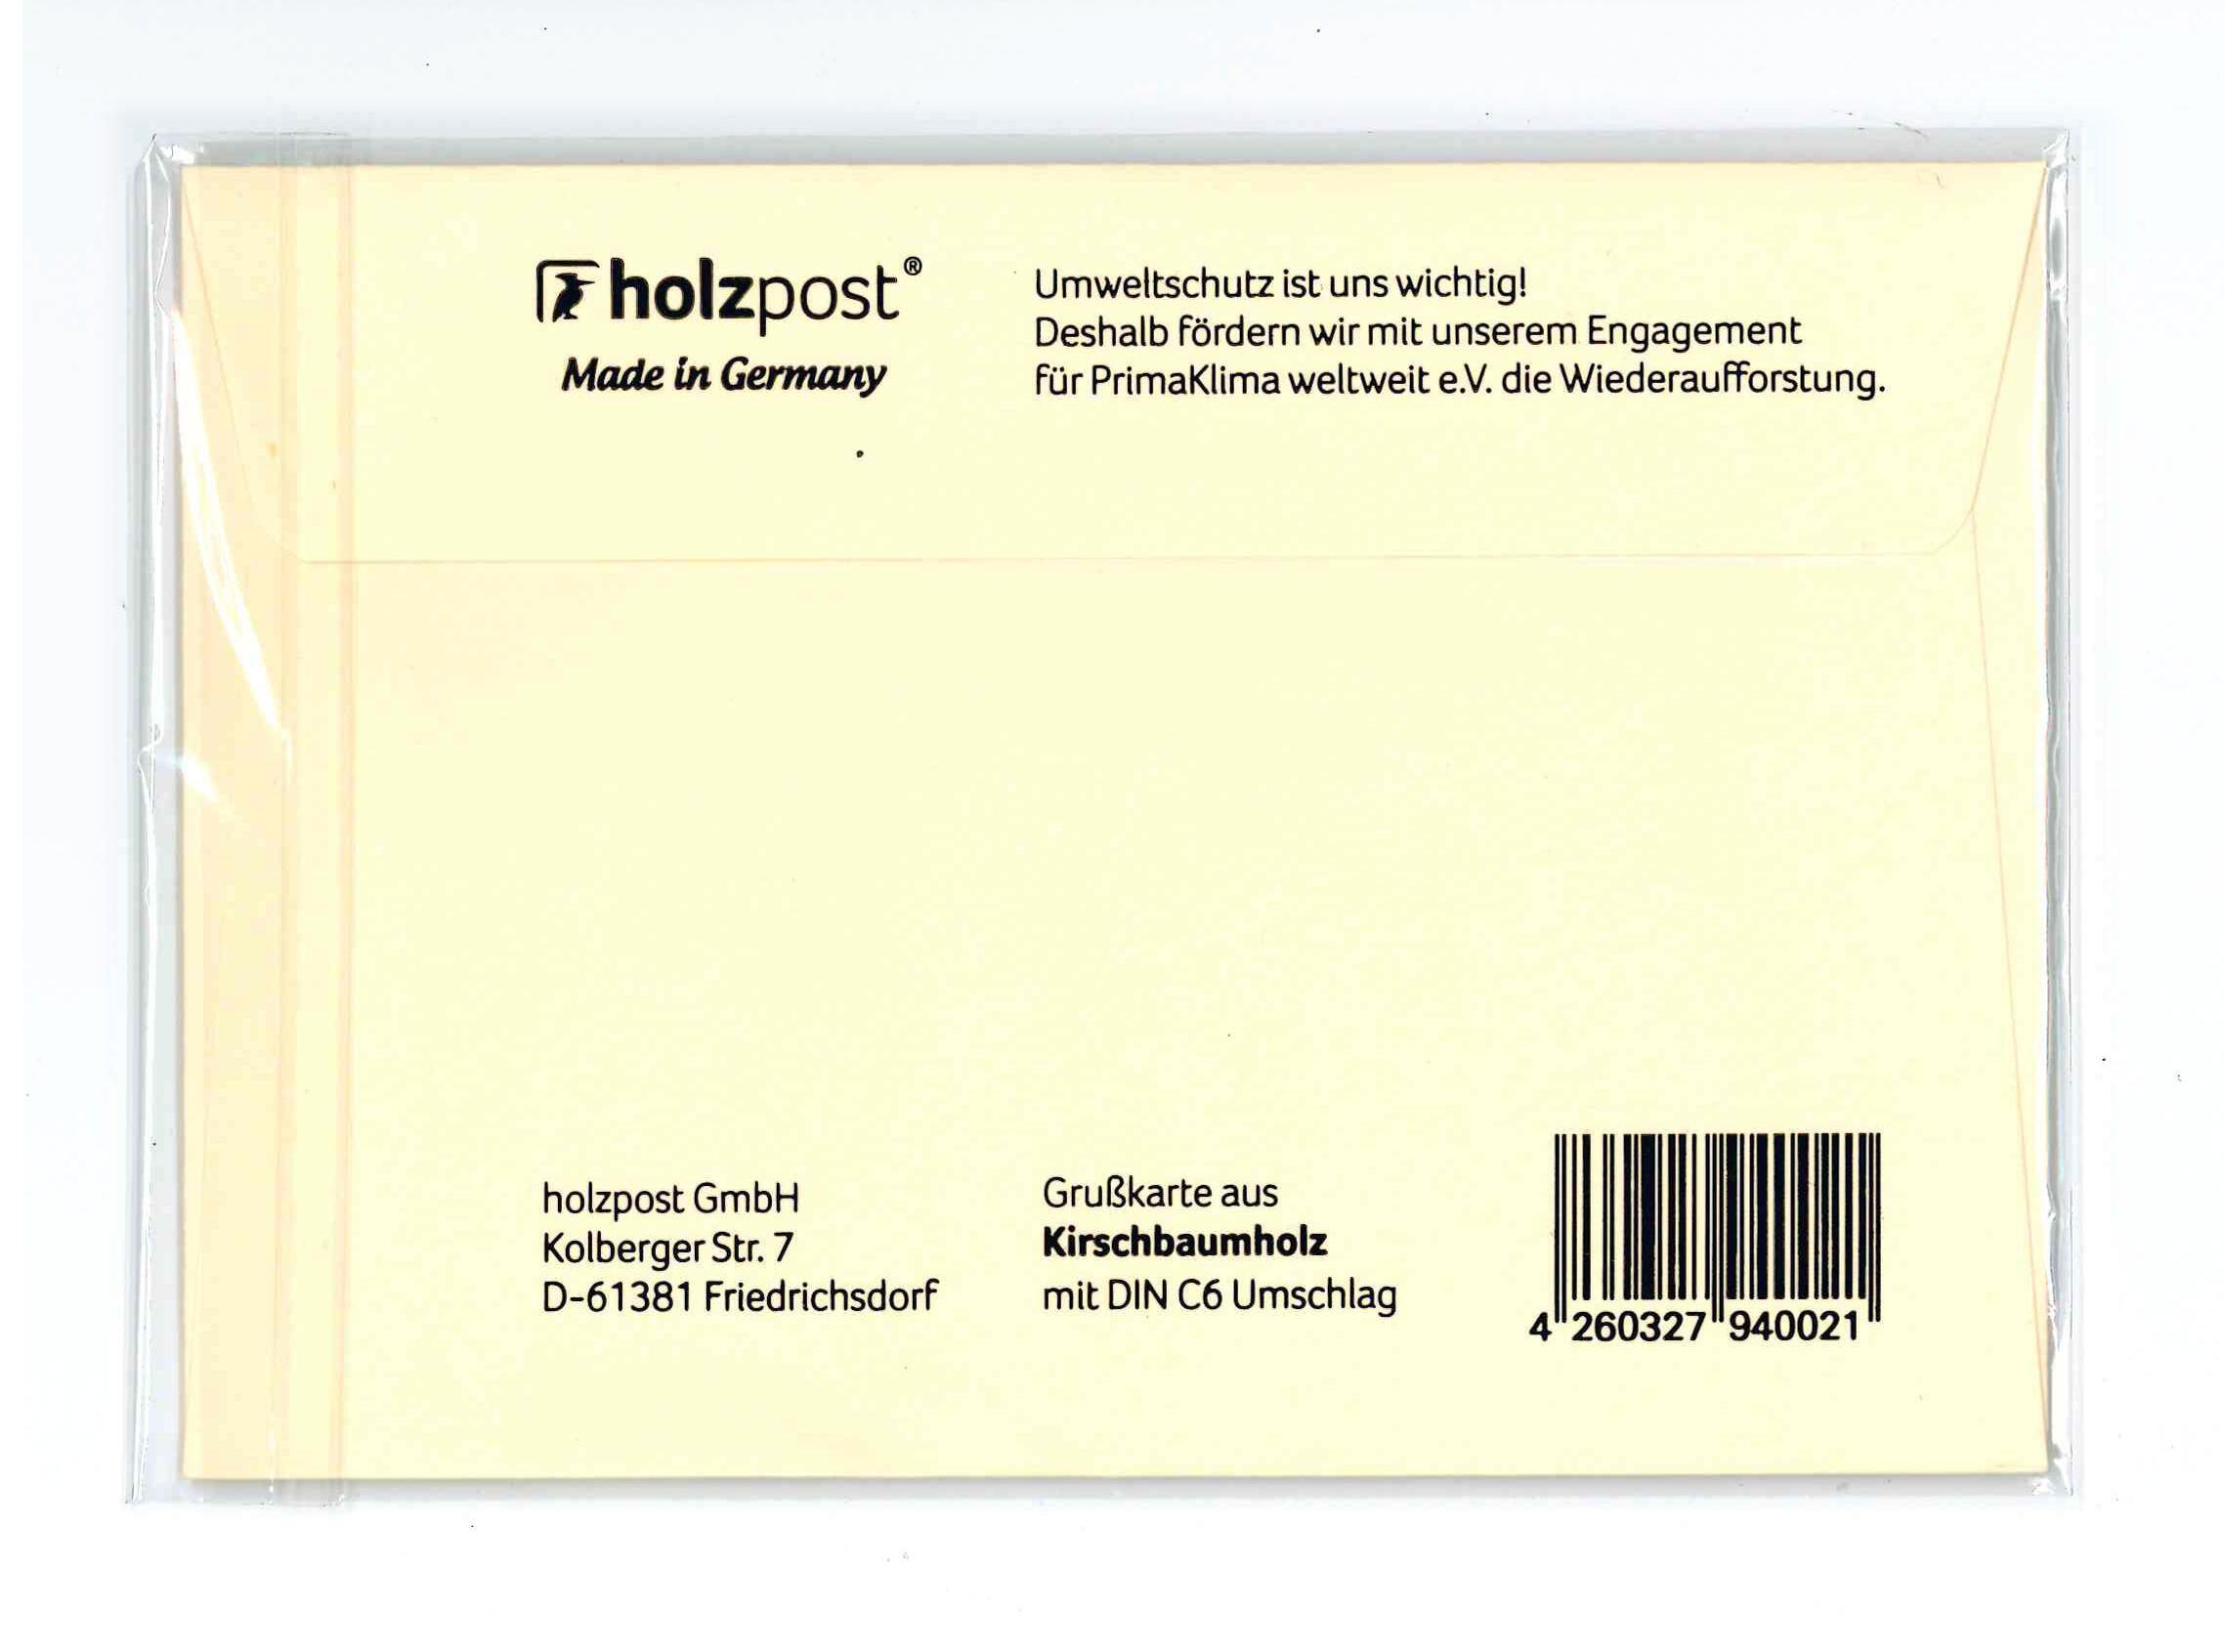 Holzpost Carte de voeux Merci avec enveloppe, bois